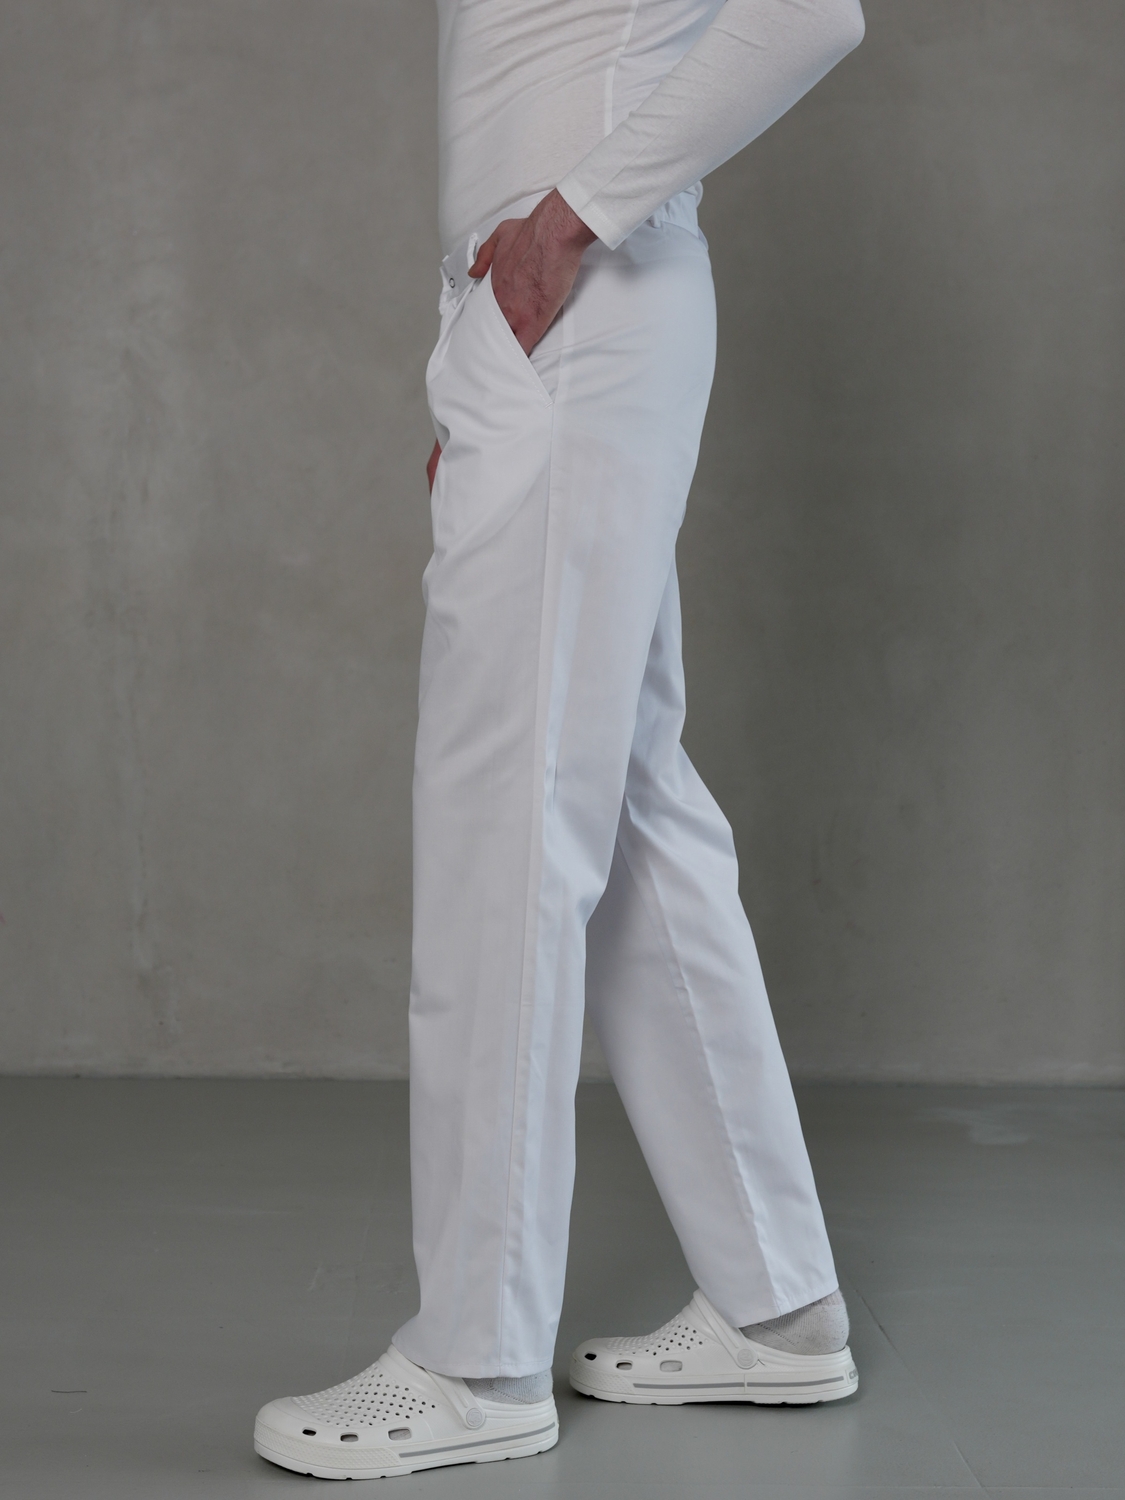 Чоловічі медичні брюки білі МШ-05